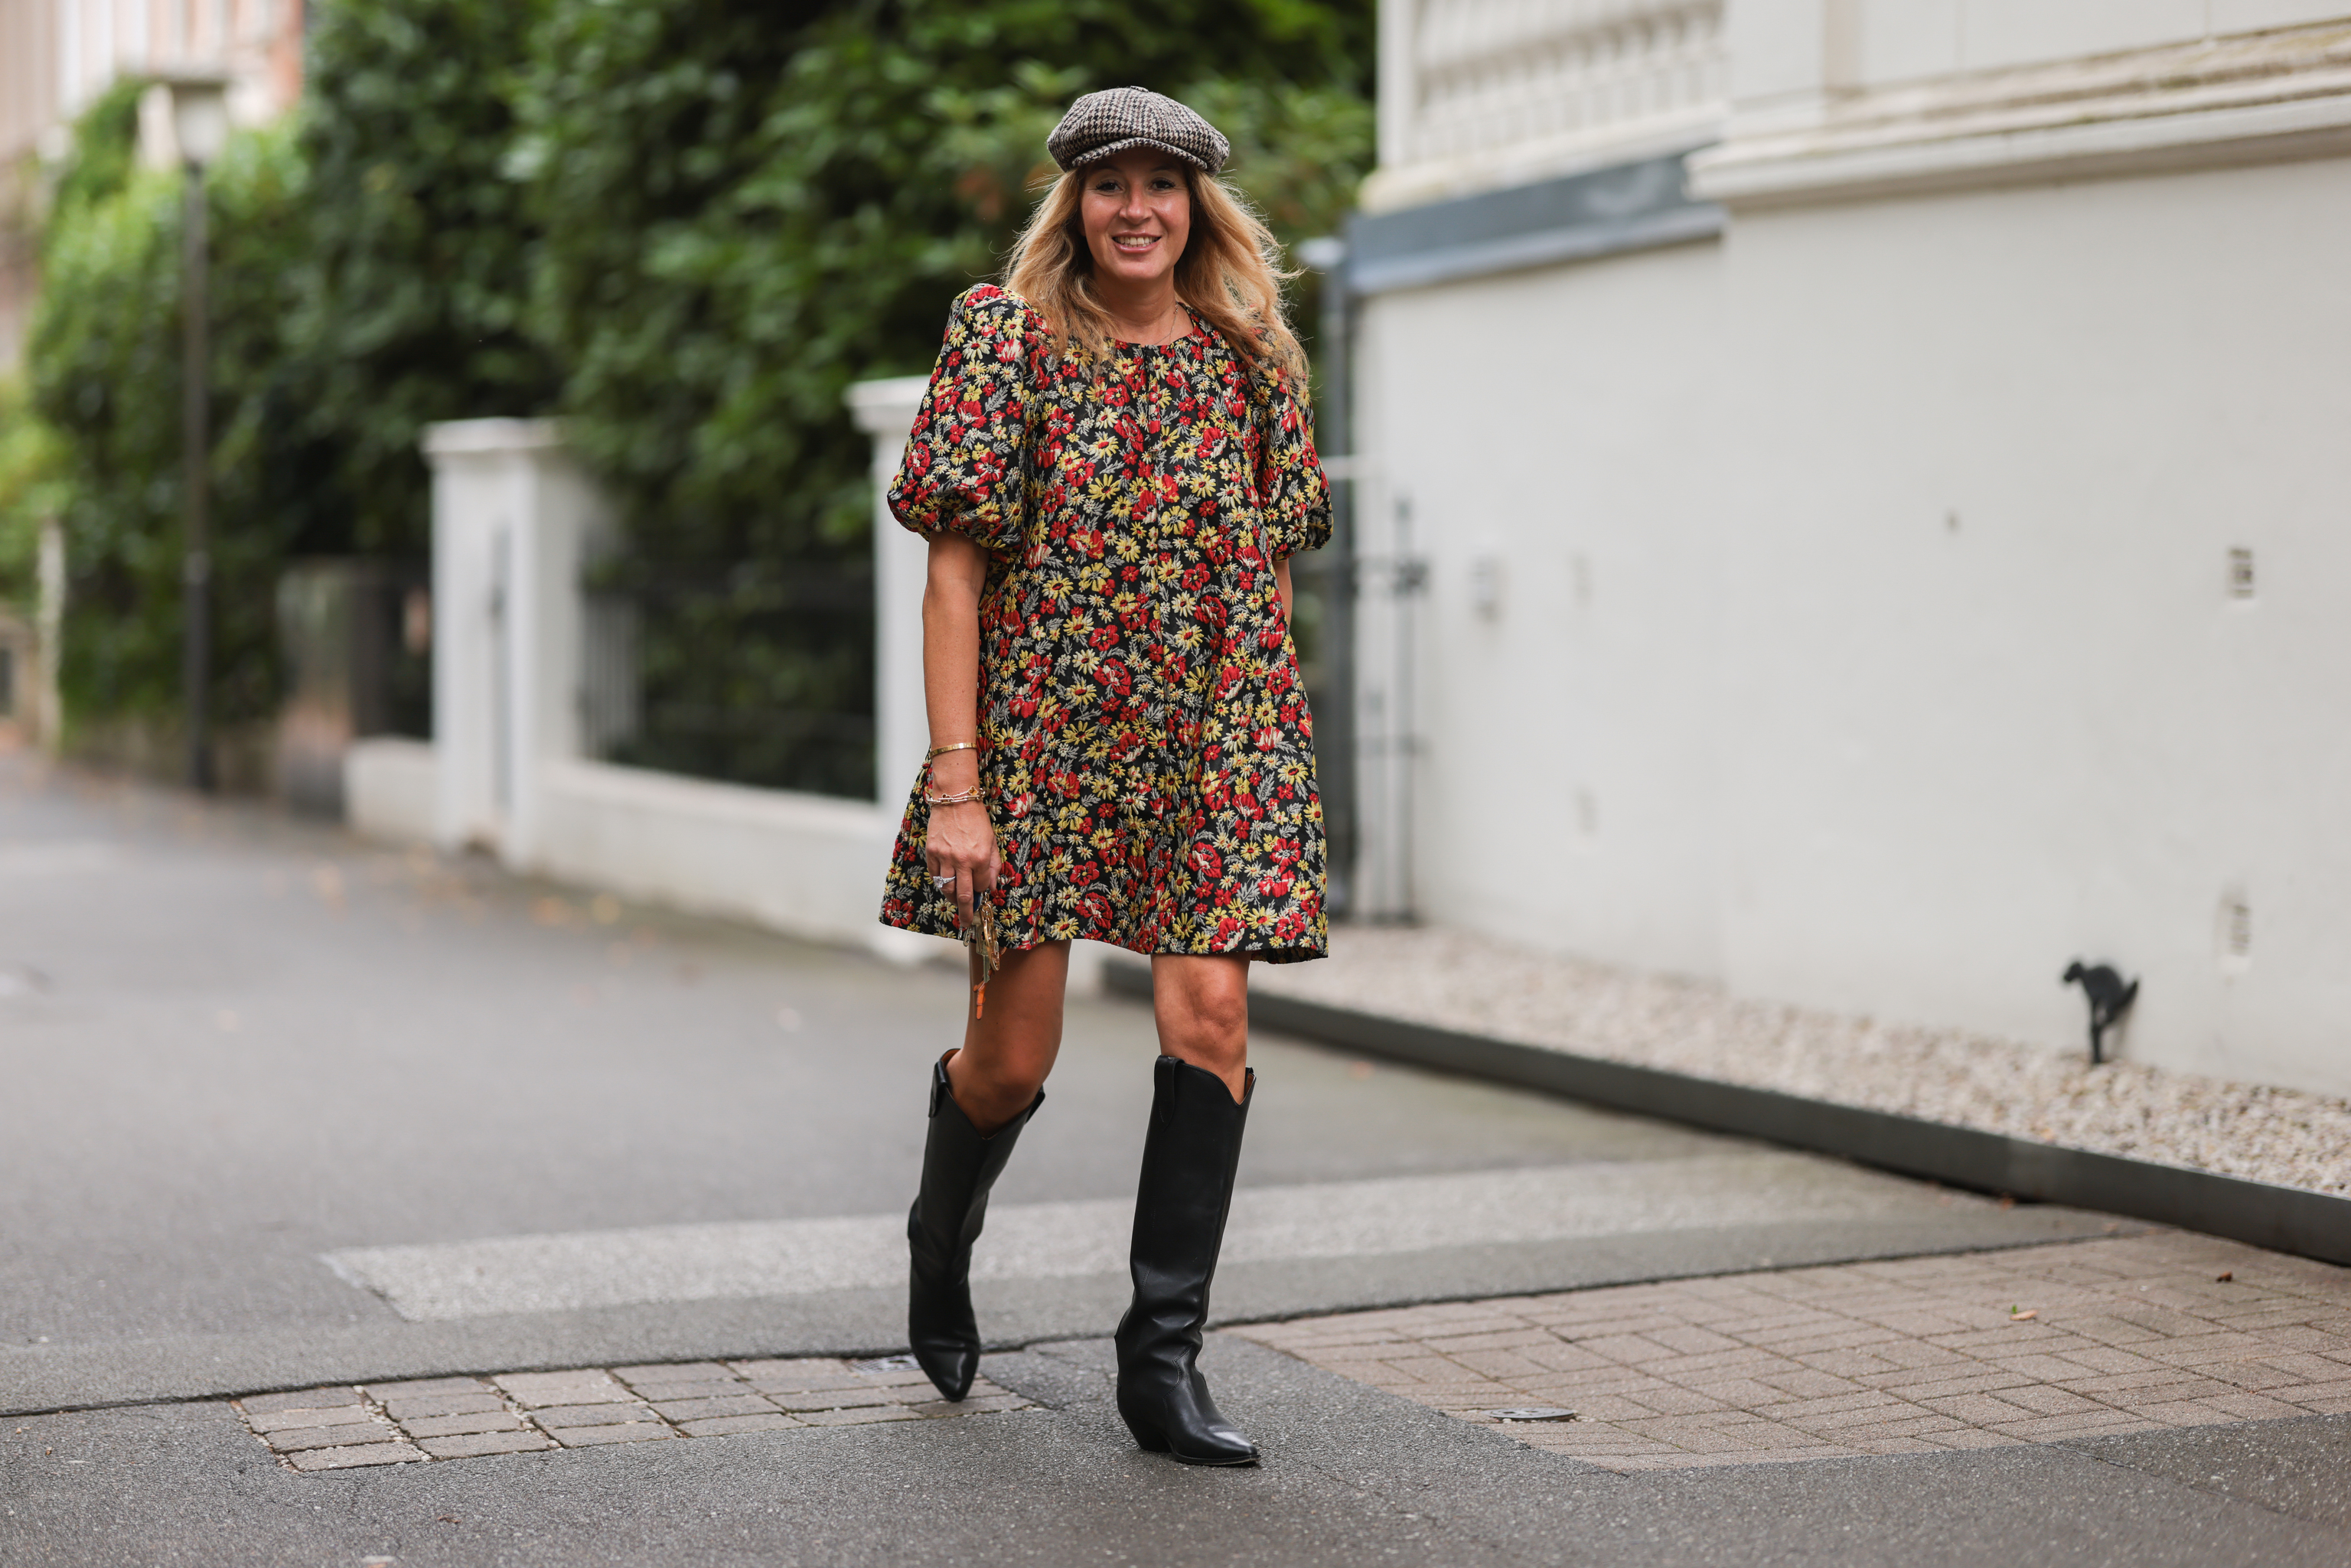 Botas cowboy baratas de Zara y Mango Outlet para seguir las tendencias | Moda